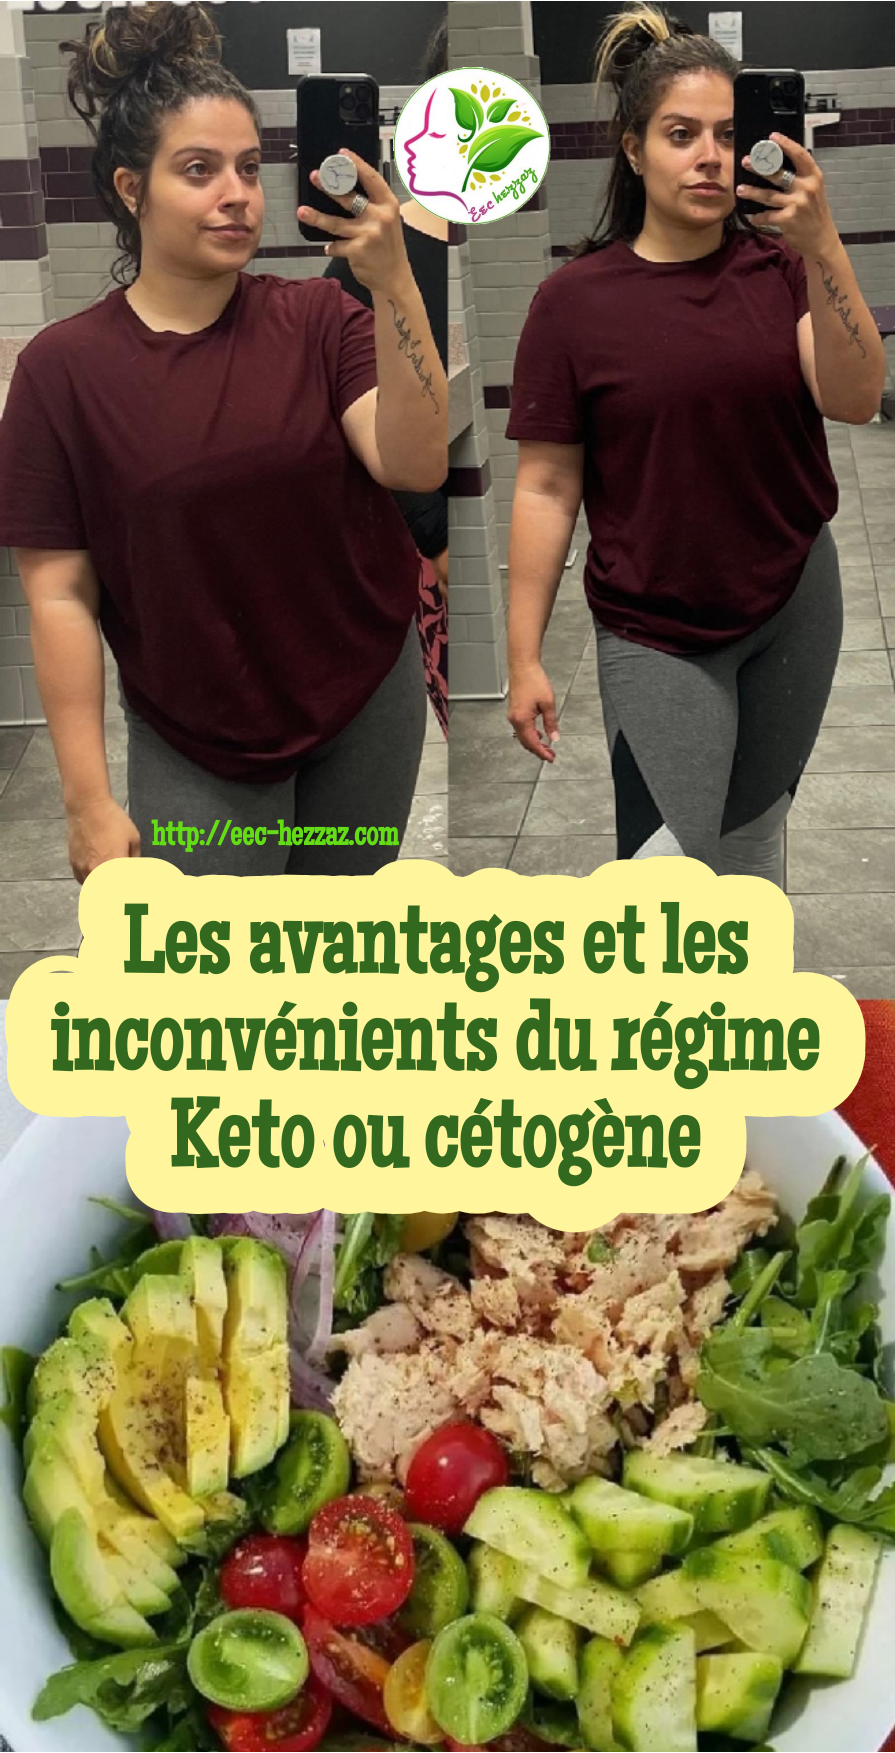 Les avantages et les inconvénients du régime Keto ou cétogène